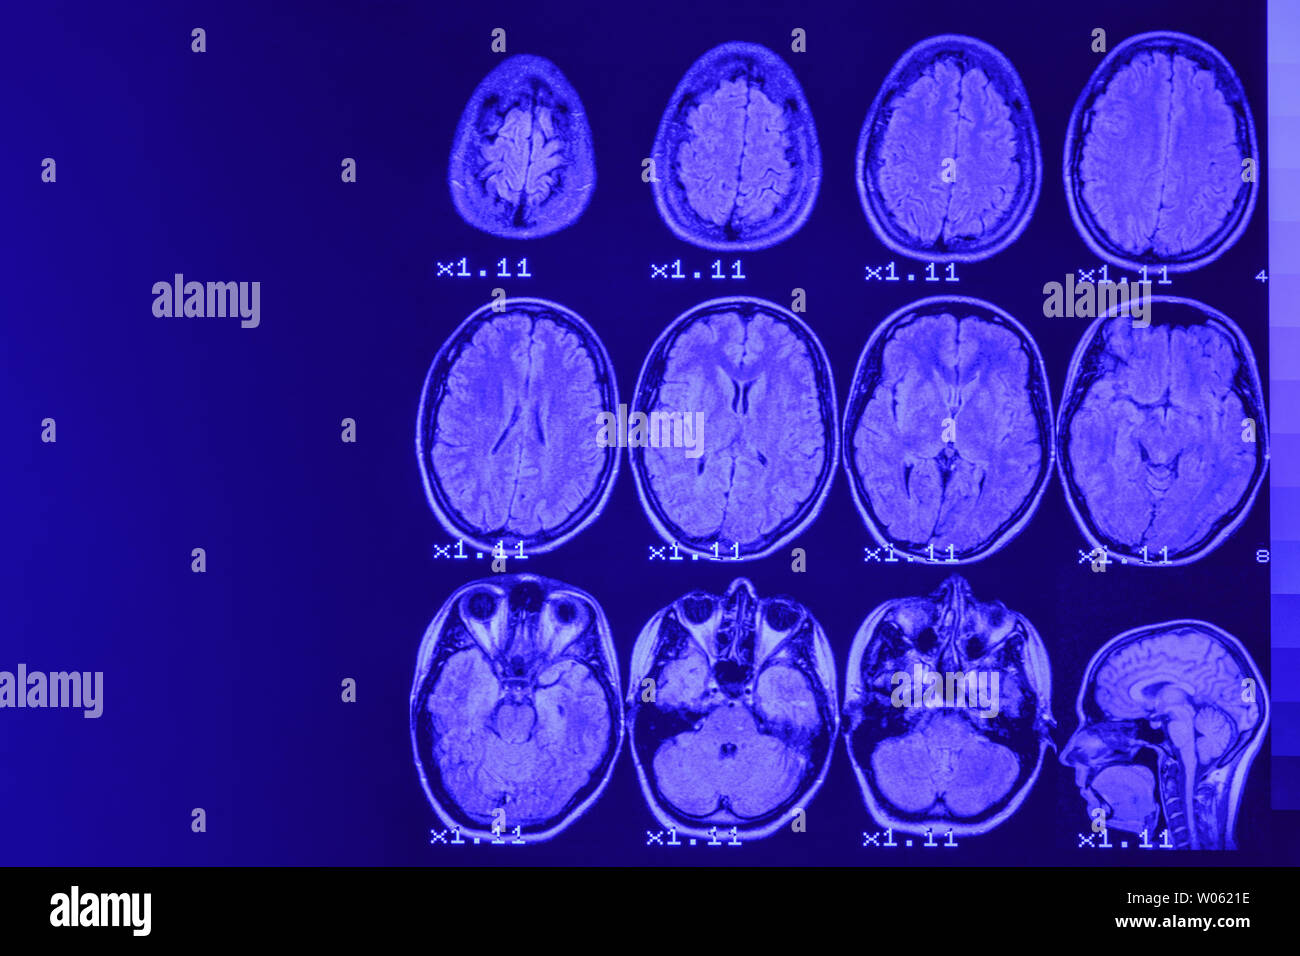 Mrt des Gehirns auf einem schwarzen Hintergrund mit blauer Hintergrundbeleuchtung. Links Platz für Werbung Beschriftung Stockfoto